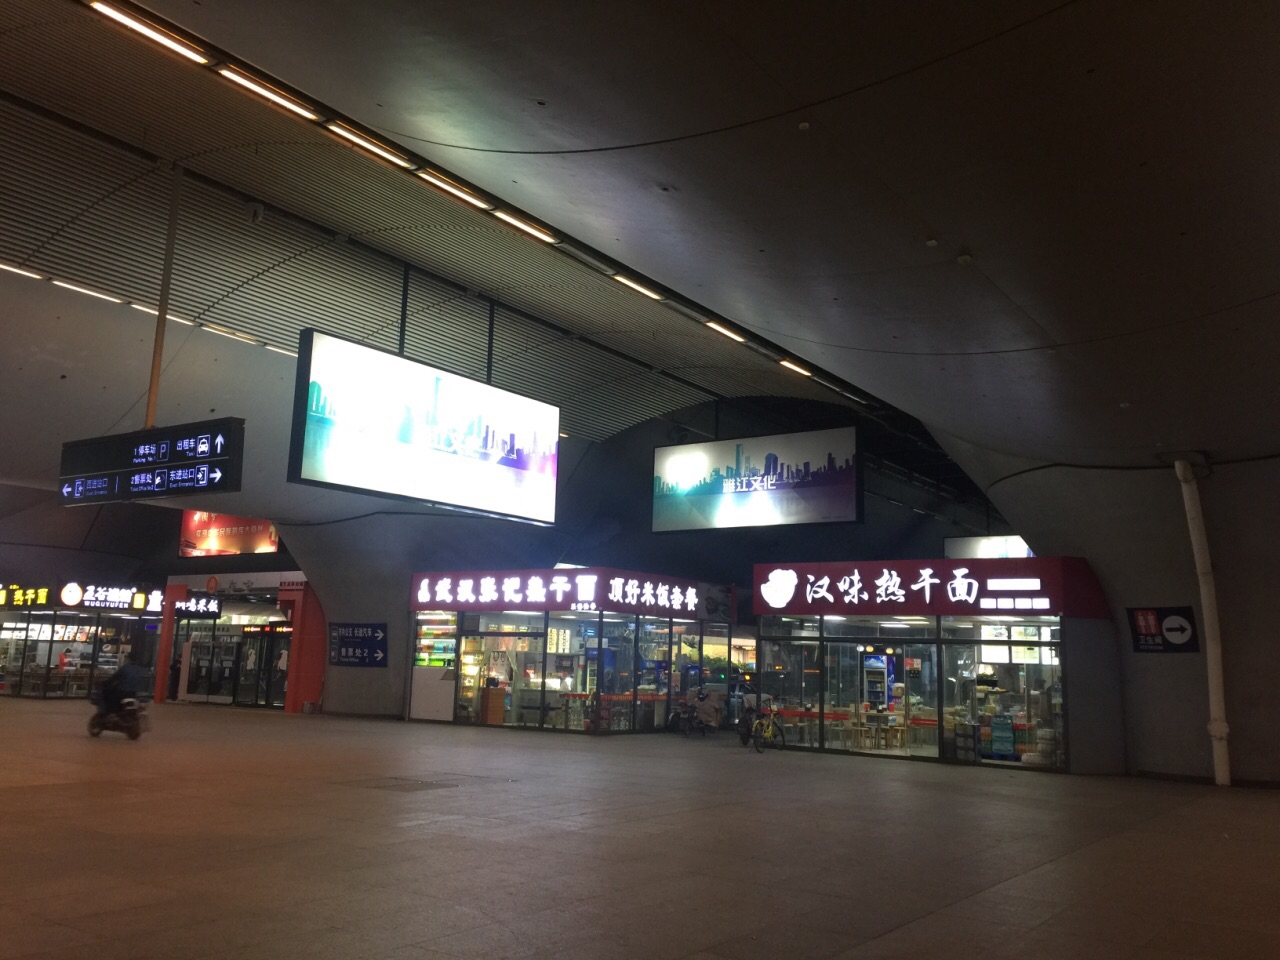 高铁太方便了,武汉站是个大站,内部装修出现漏水,百年大计当下就有